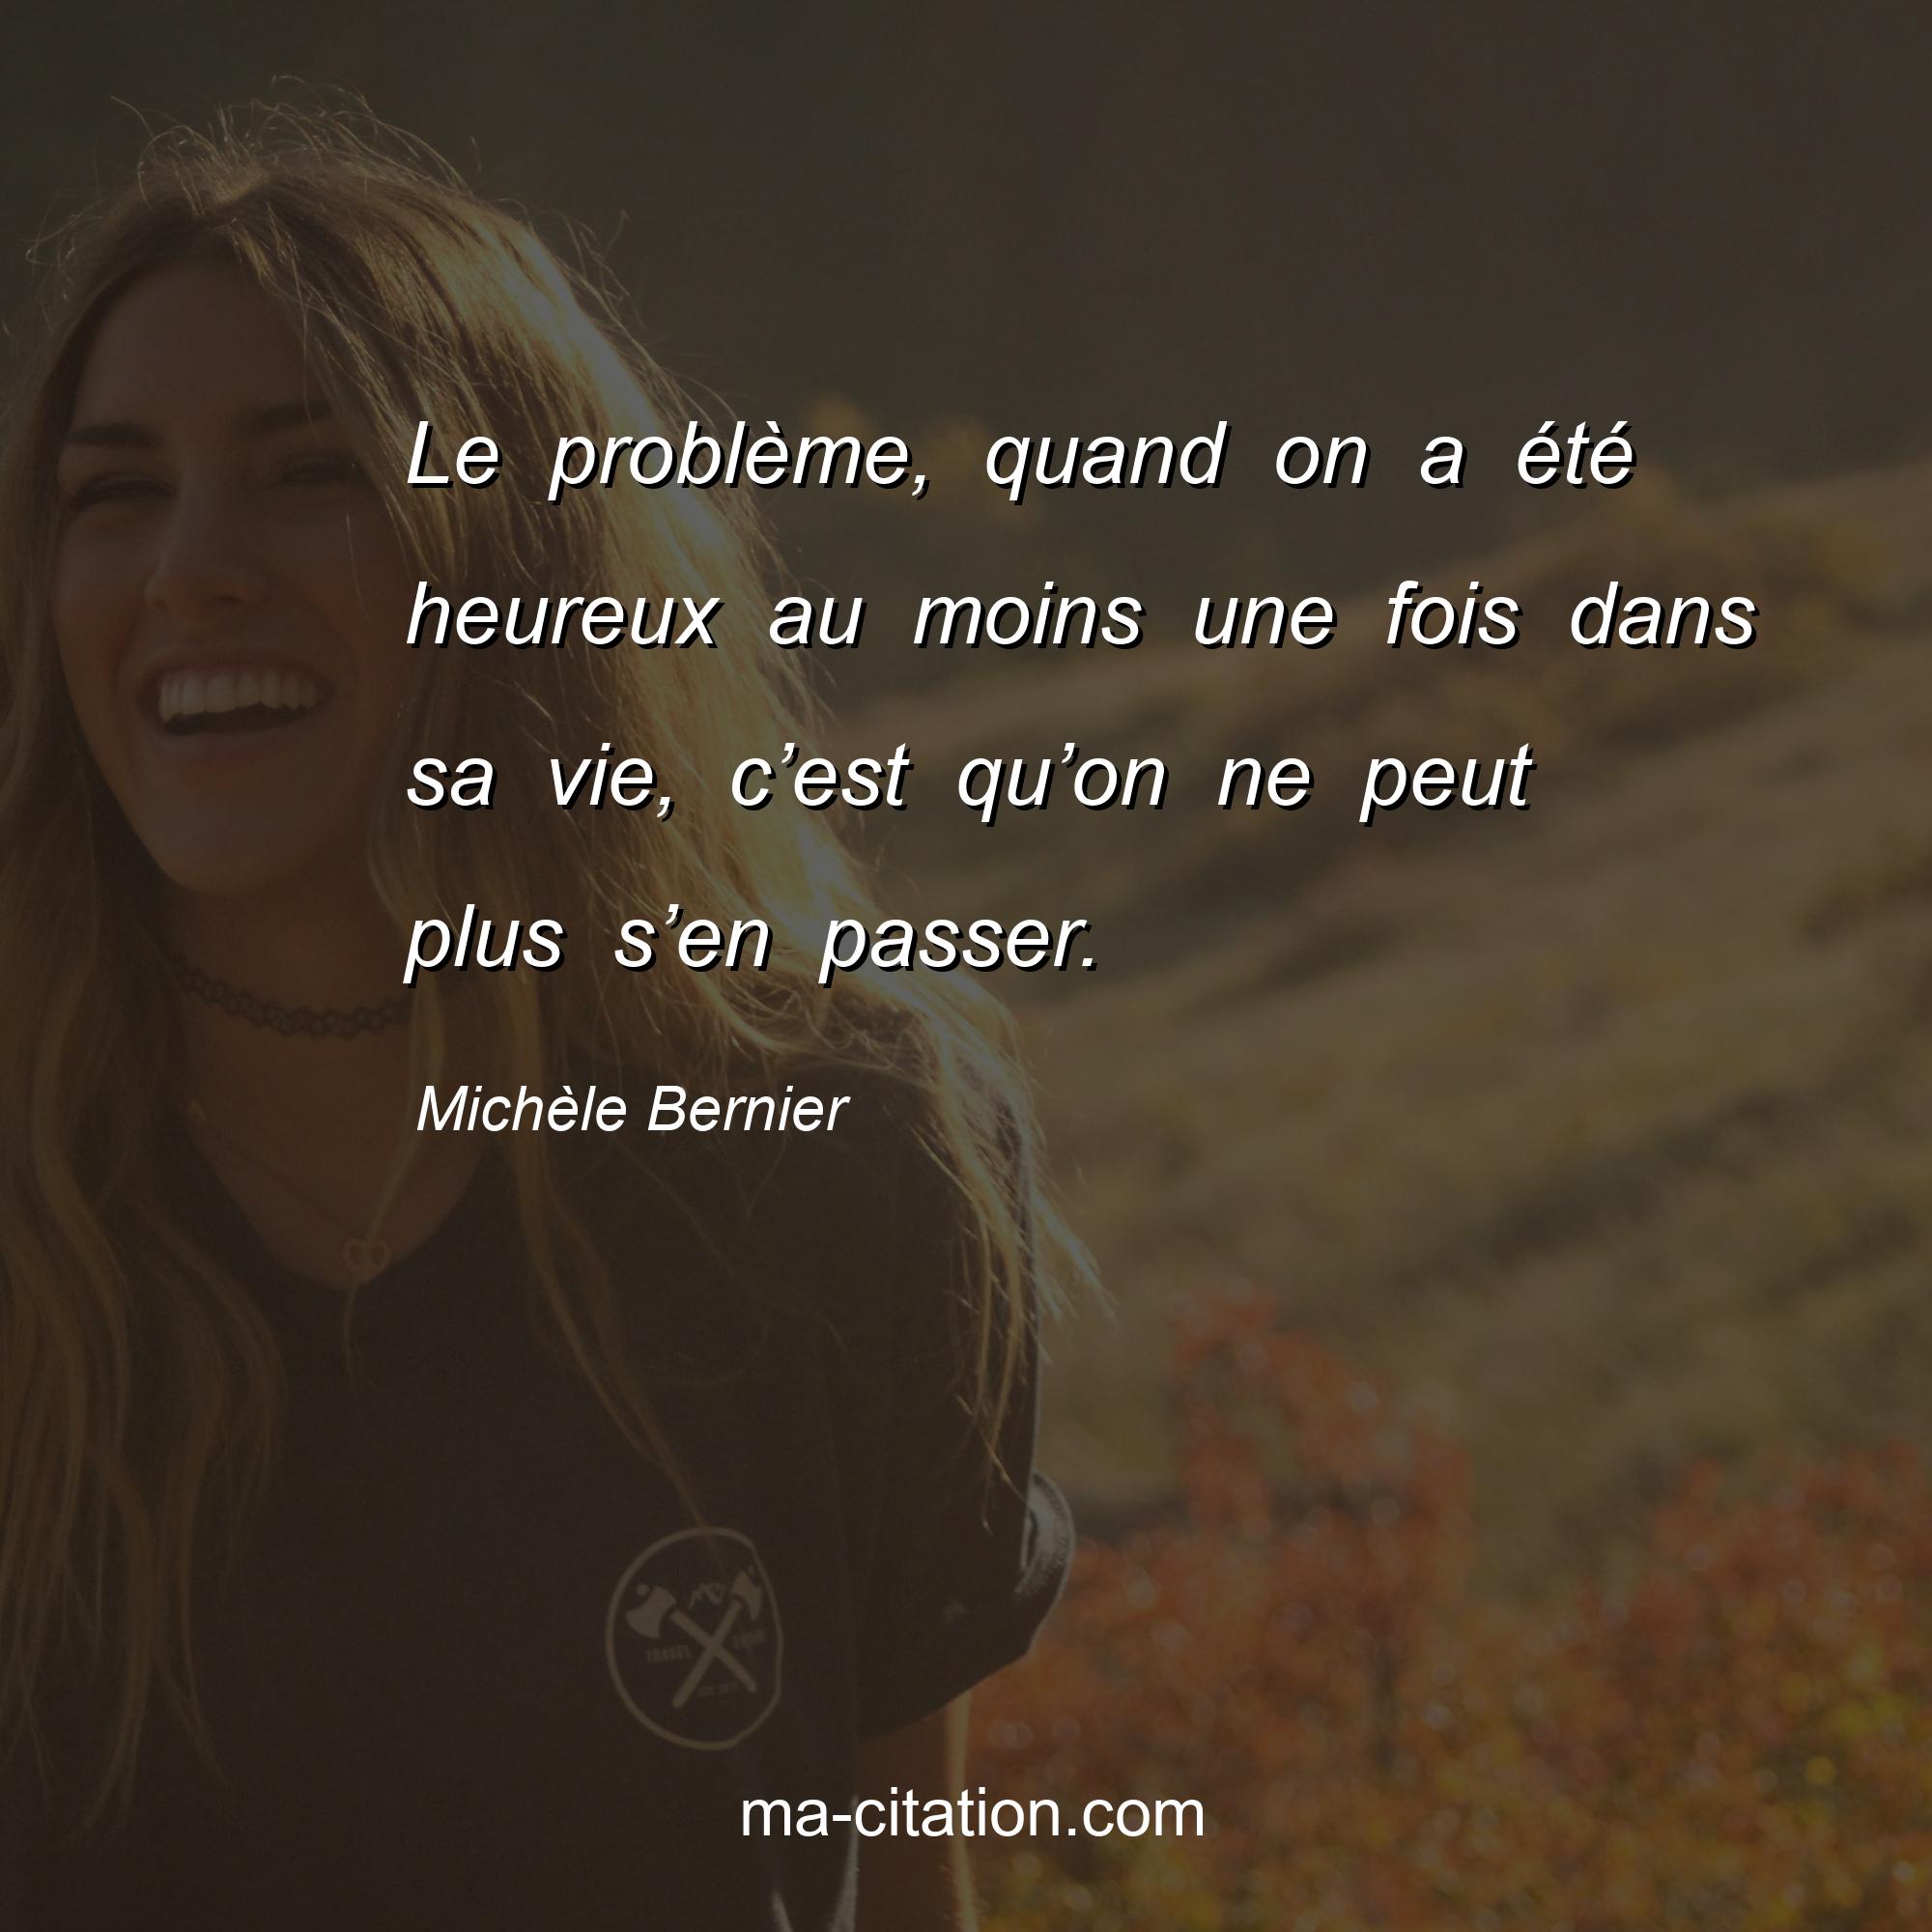 Michèle Bernier : Le problème, quand on a été heureux au moins une fois dans sa vie, c’est qu’on ne peut plus s’en passer.